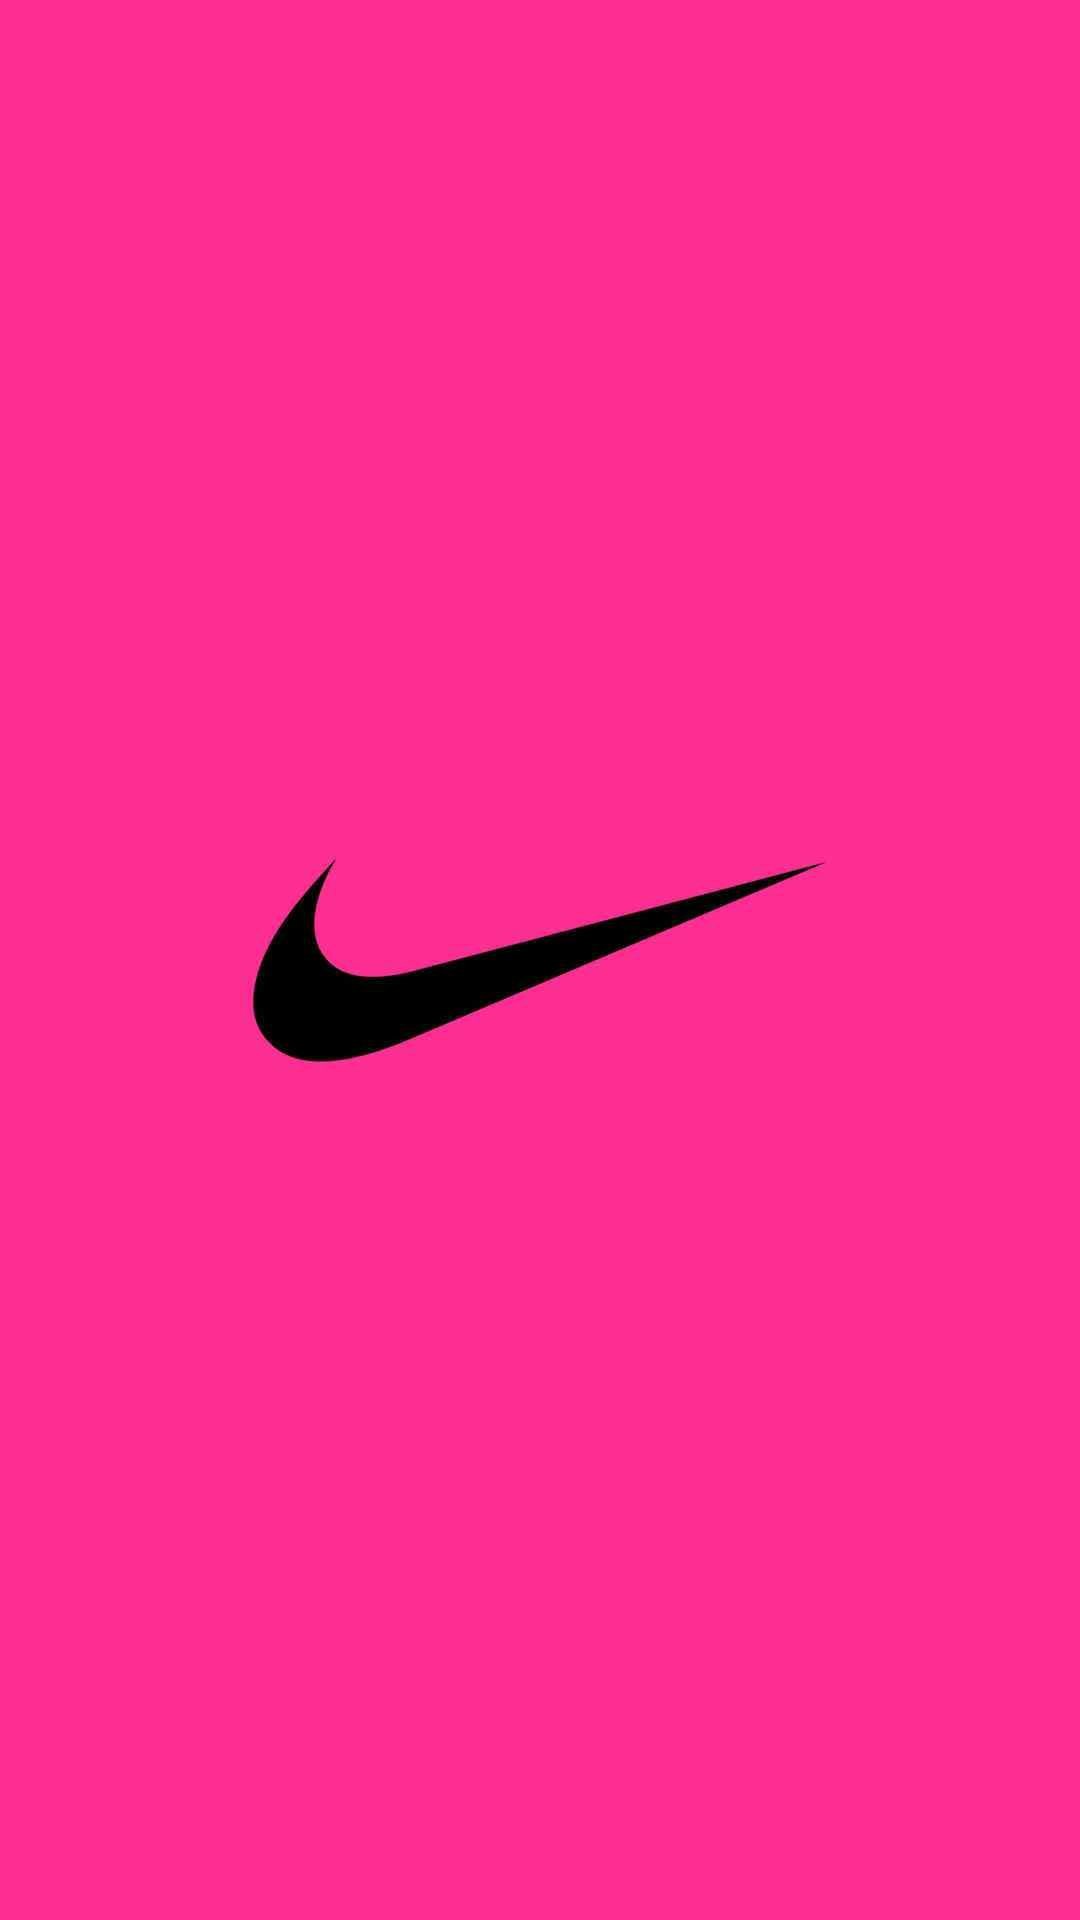 Tại sao lại phải trả tiền cho những hình nền Nike màu hồng khi bạn hoàn toàn có thể tải và sử dụng miễn phí 73 bức ảnh đẹp trên WallpaperPlay? Với độ phân giải 1080x1920, những hình nền này sẽ làm cho màn hình điện thoại của bạn trở nên đẹp hơn bao giờ hết. Tải ngay để trang trí điện thoại theo phong cách của riêng bạn!